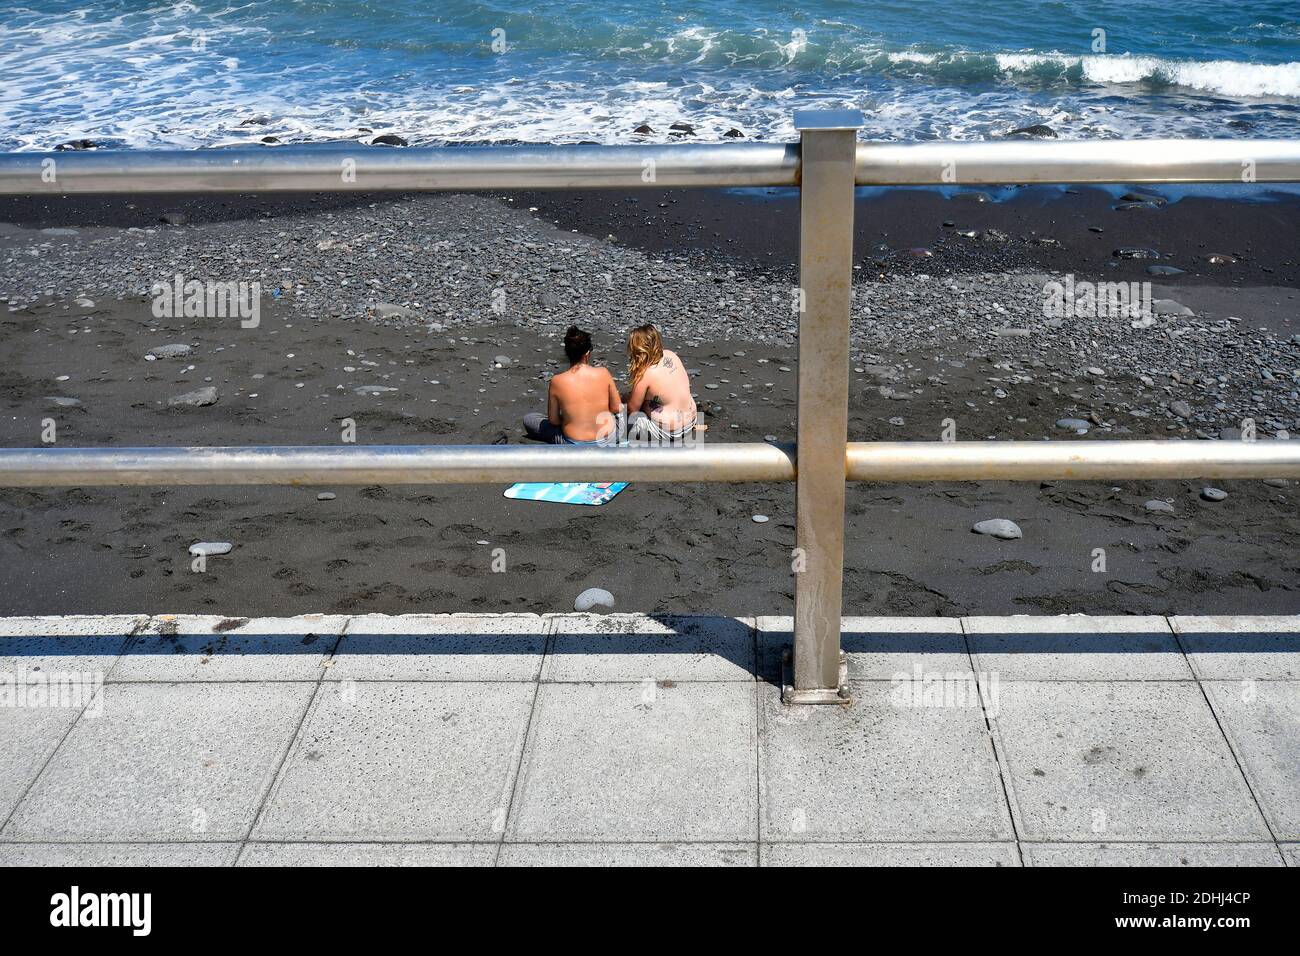 Espagne, îles Canaries, Tenerife, deux femmes sur la plage avec tatouage Banque D'Images